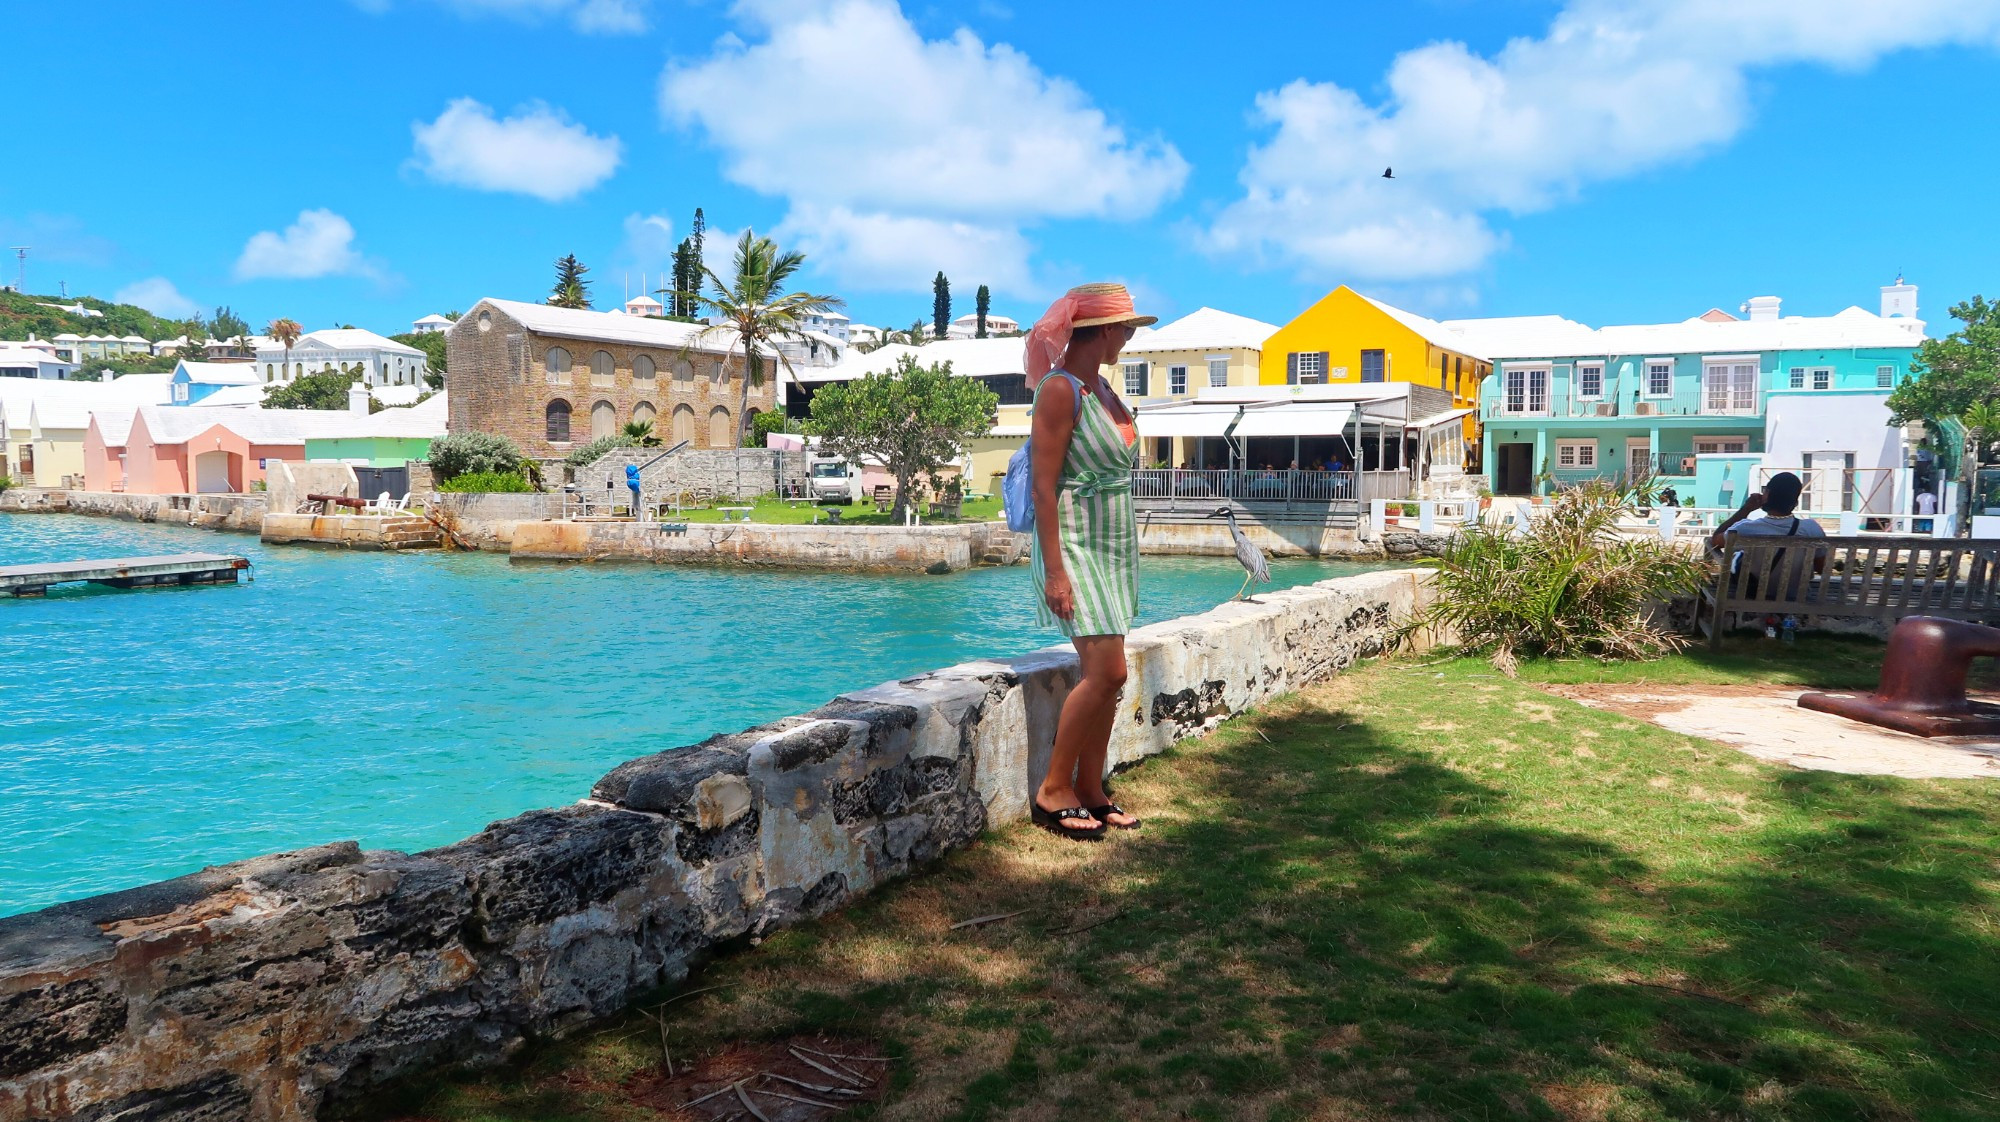 St George, Bermuda